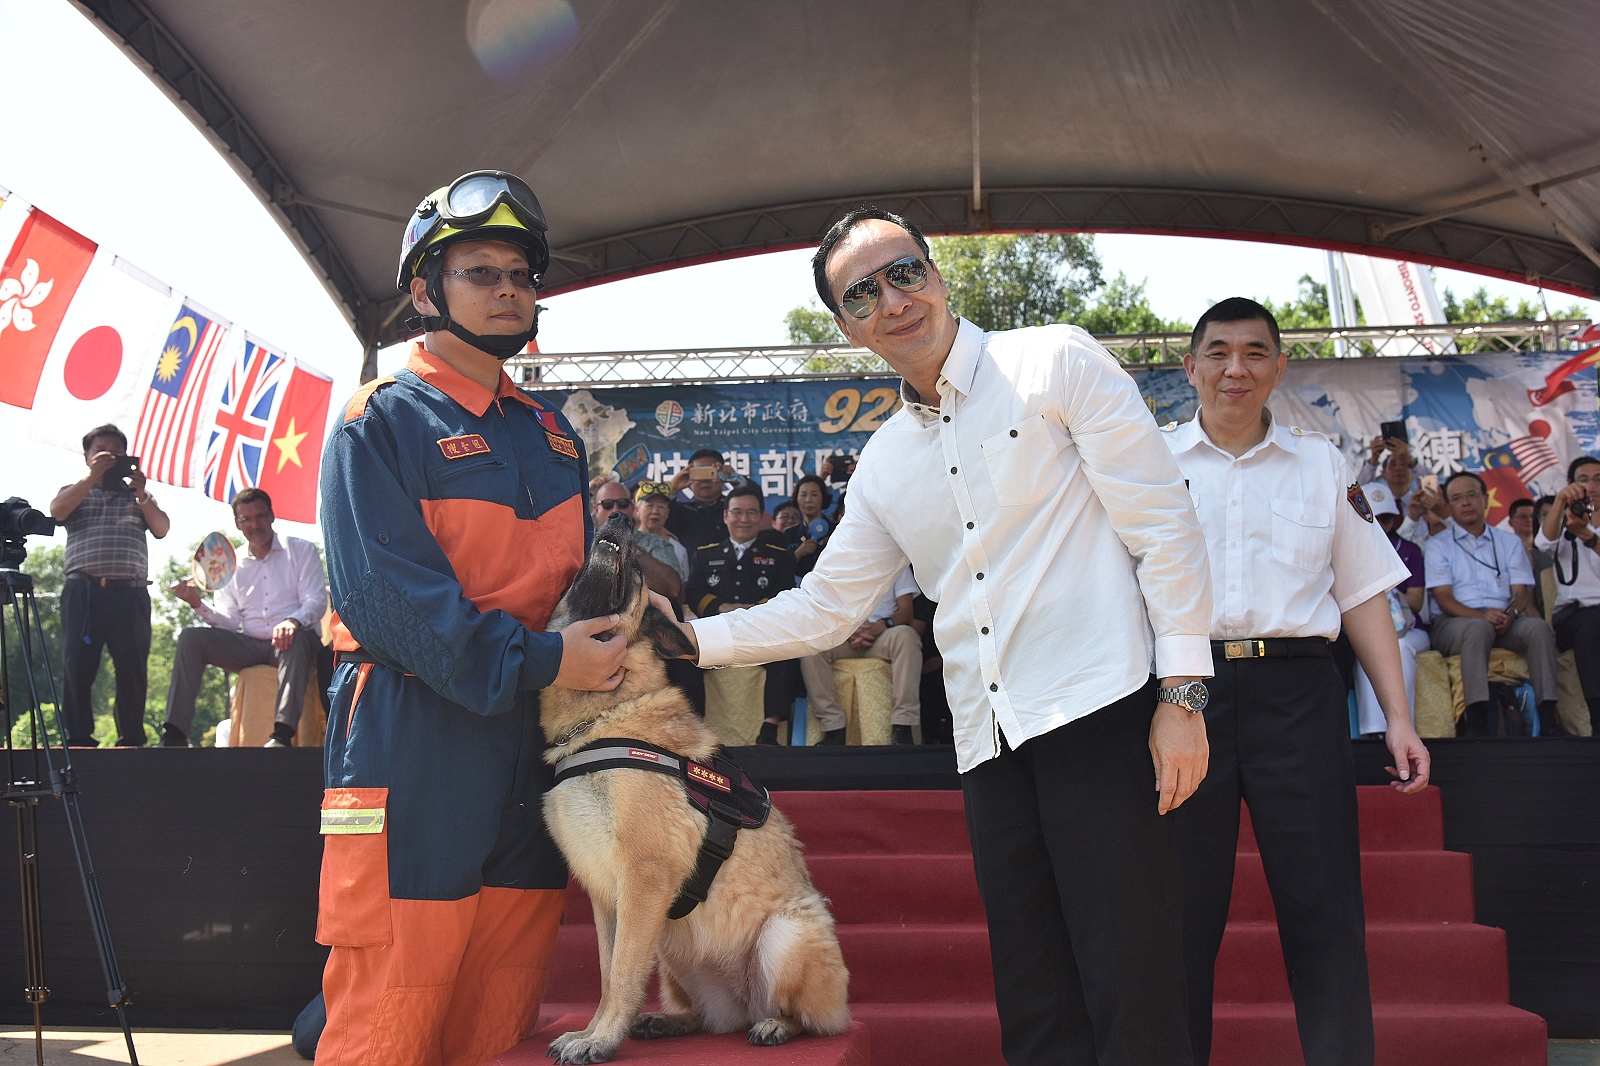 朱市長分別為4隻搜救犬(伊莎、奇諾、貝塔、貝兒)授予一線四星及一線三星佩階